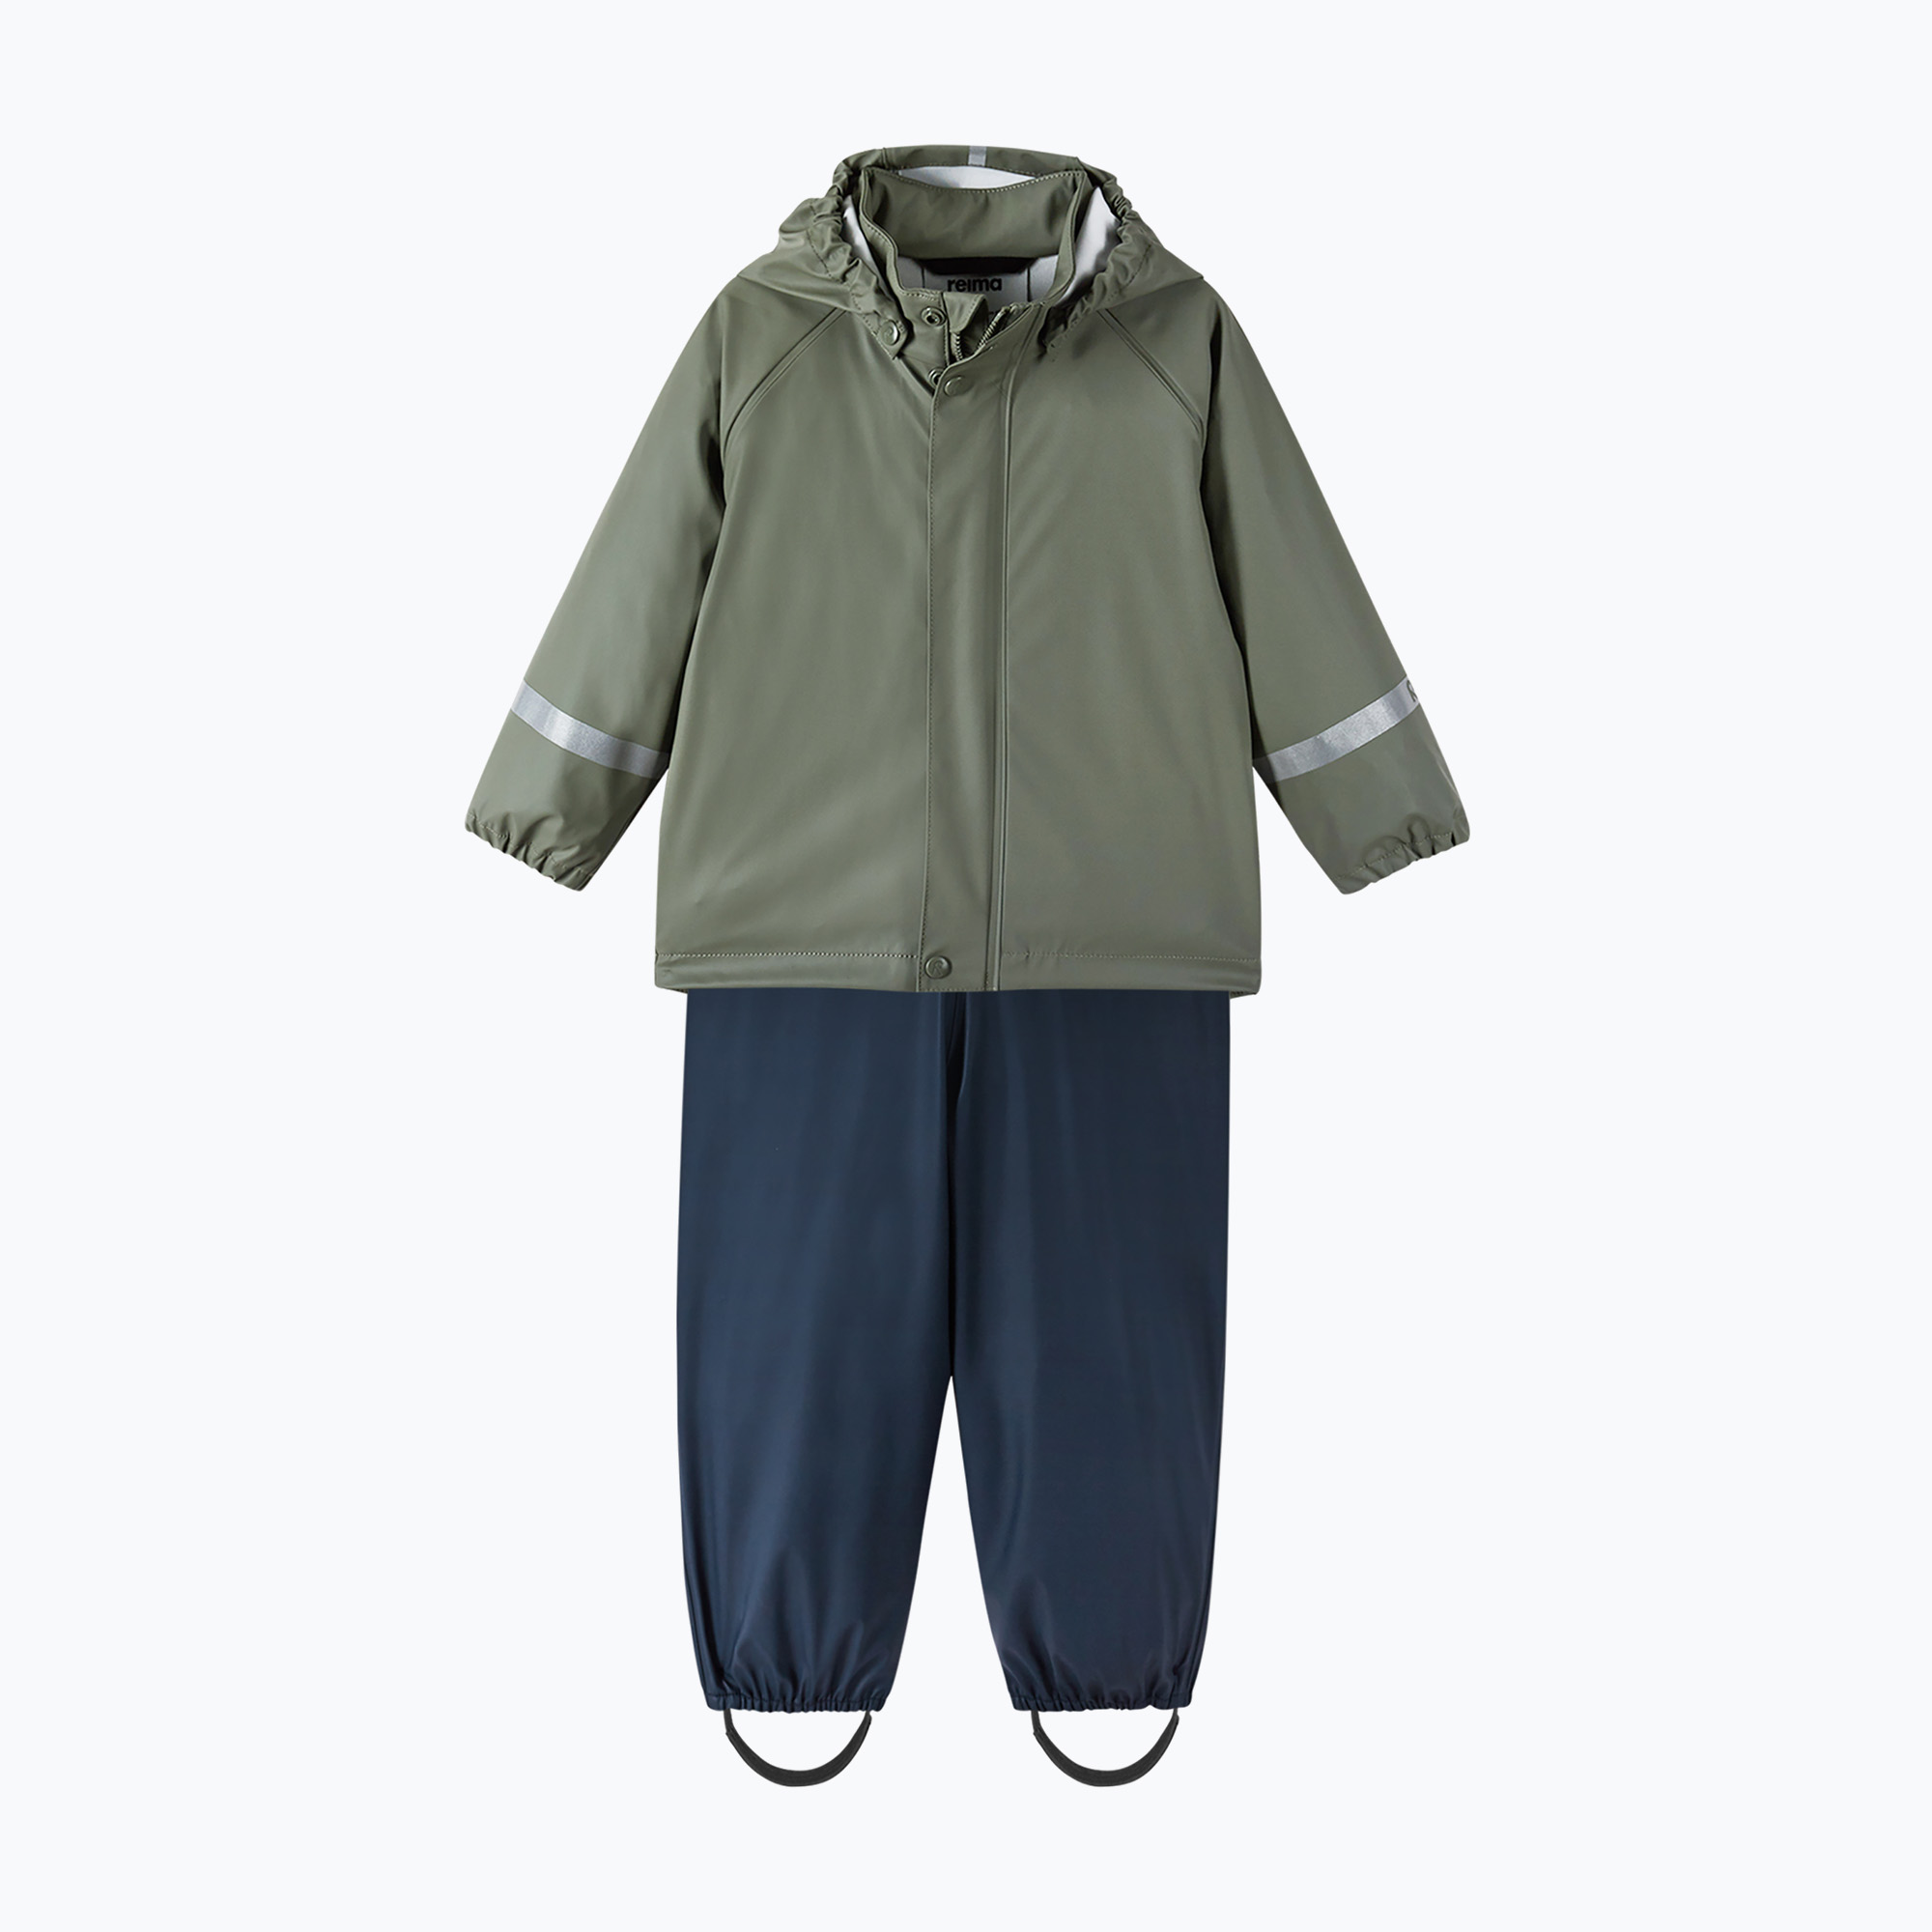 Reima Tihku детски комплект за дъжд яке панталон зеленозелен 5100021A-8920